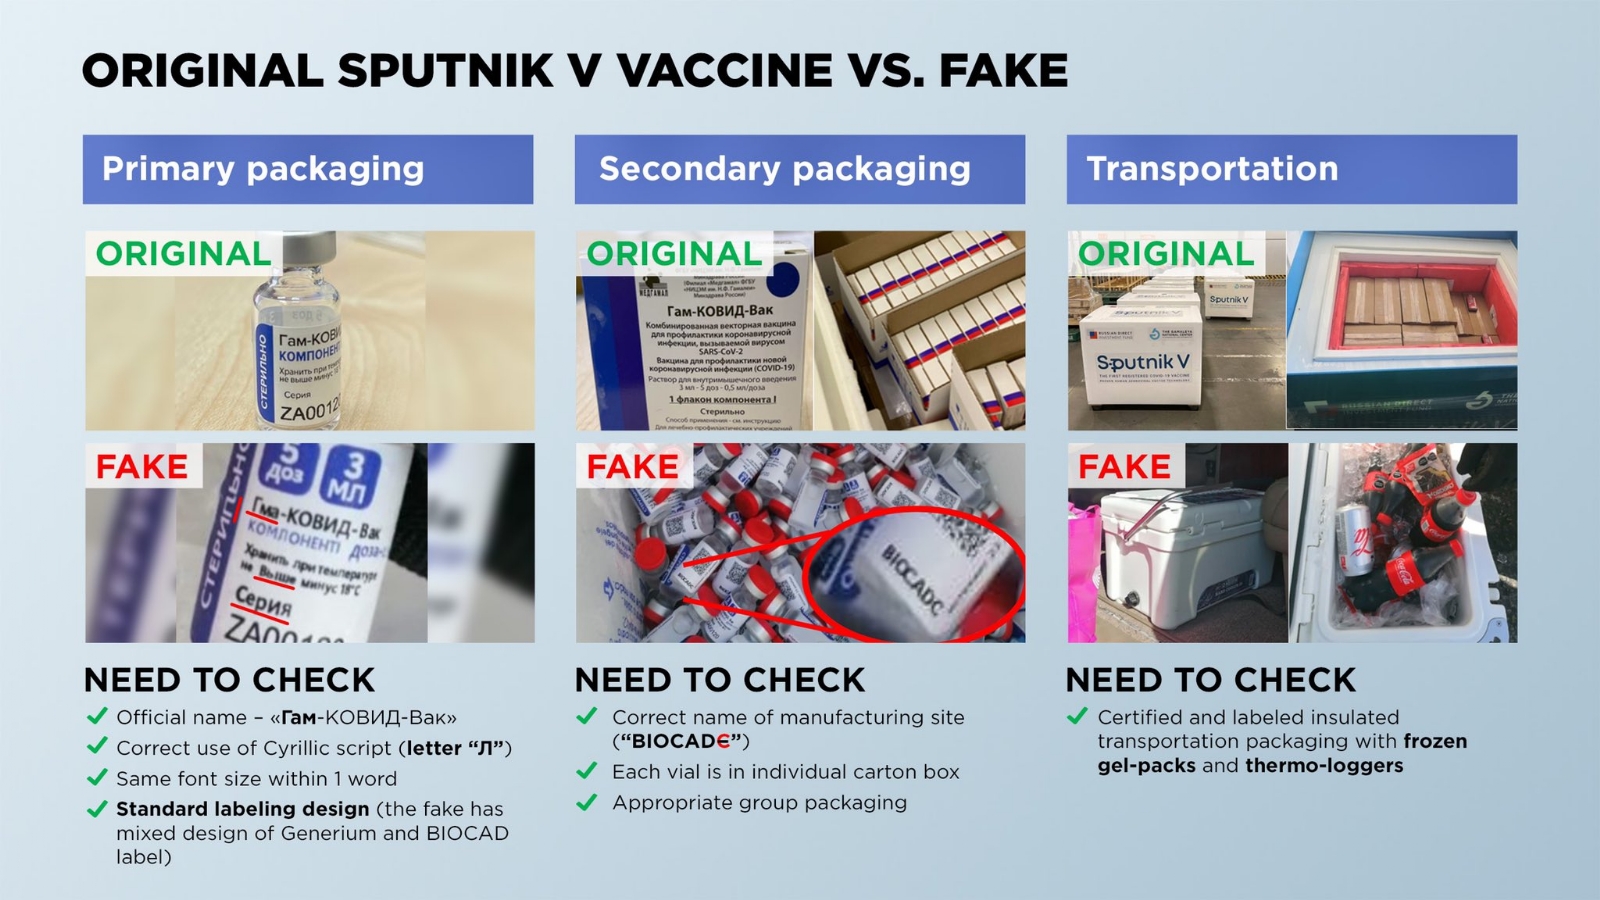 Vacunas Sputnik V decomisadas en Campeche son falsas: Rusia